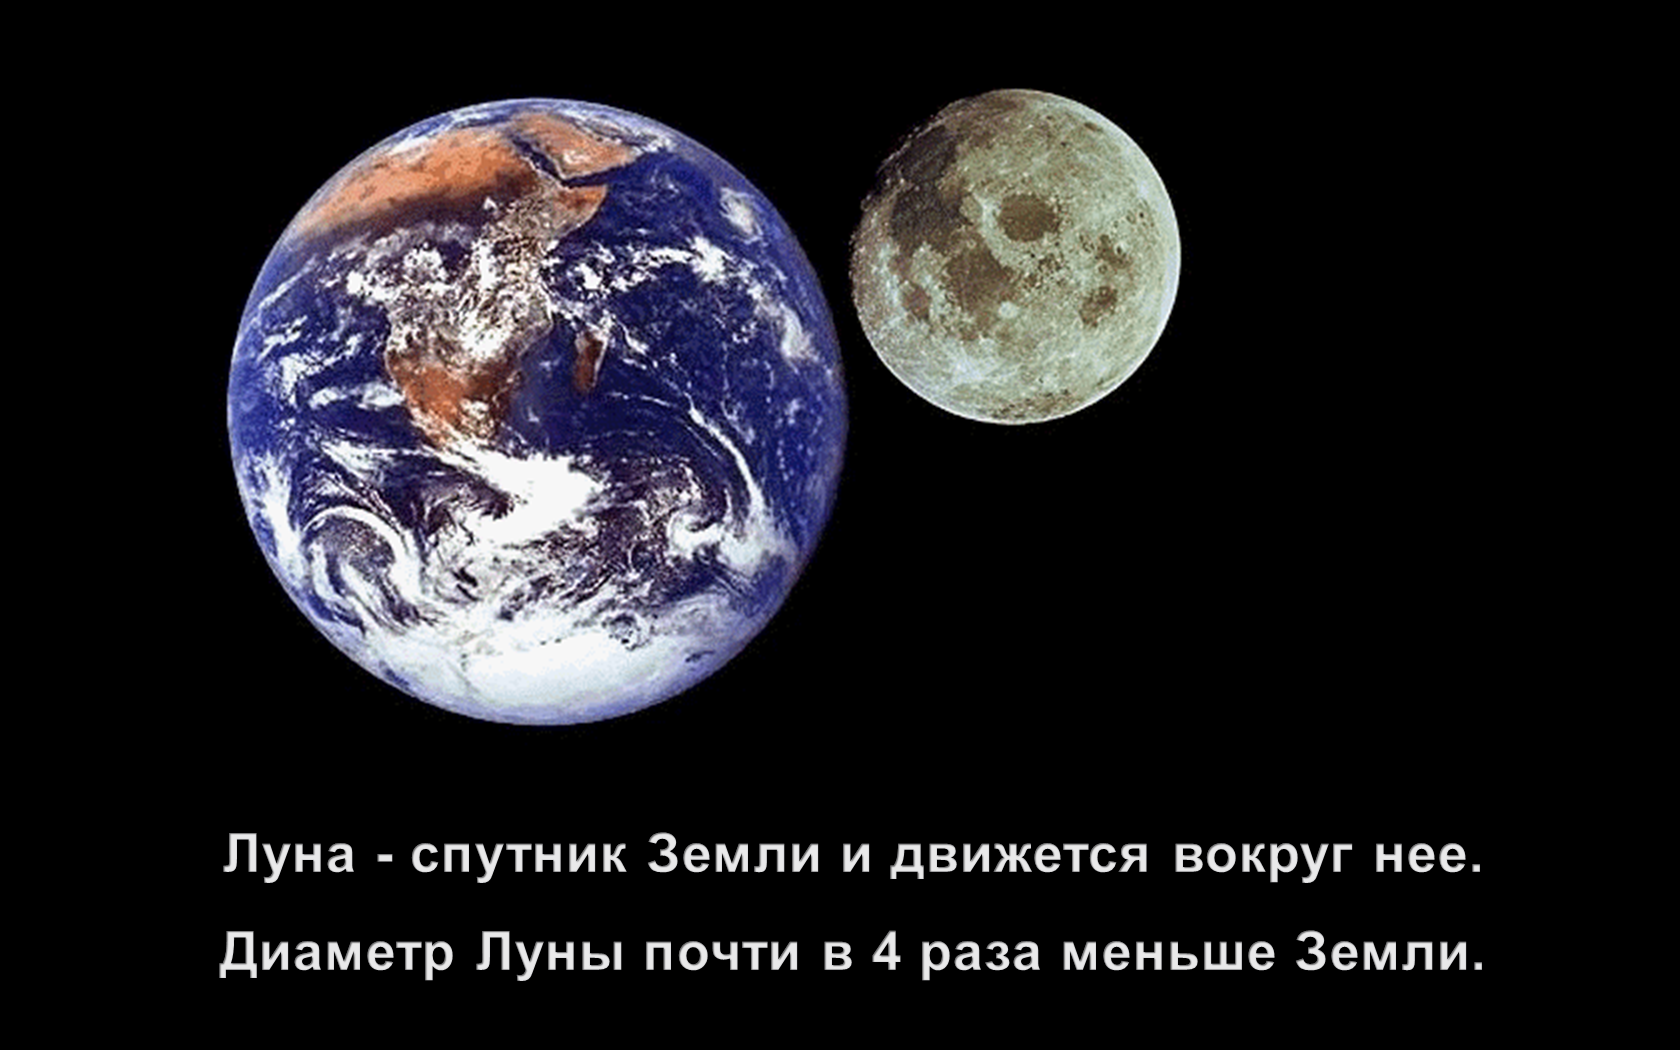 Спутники больше луны